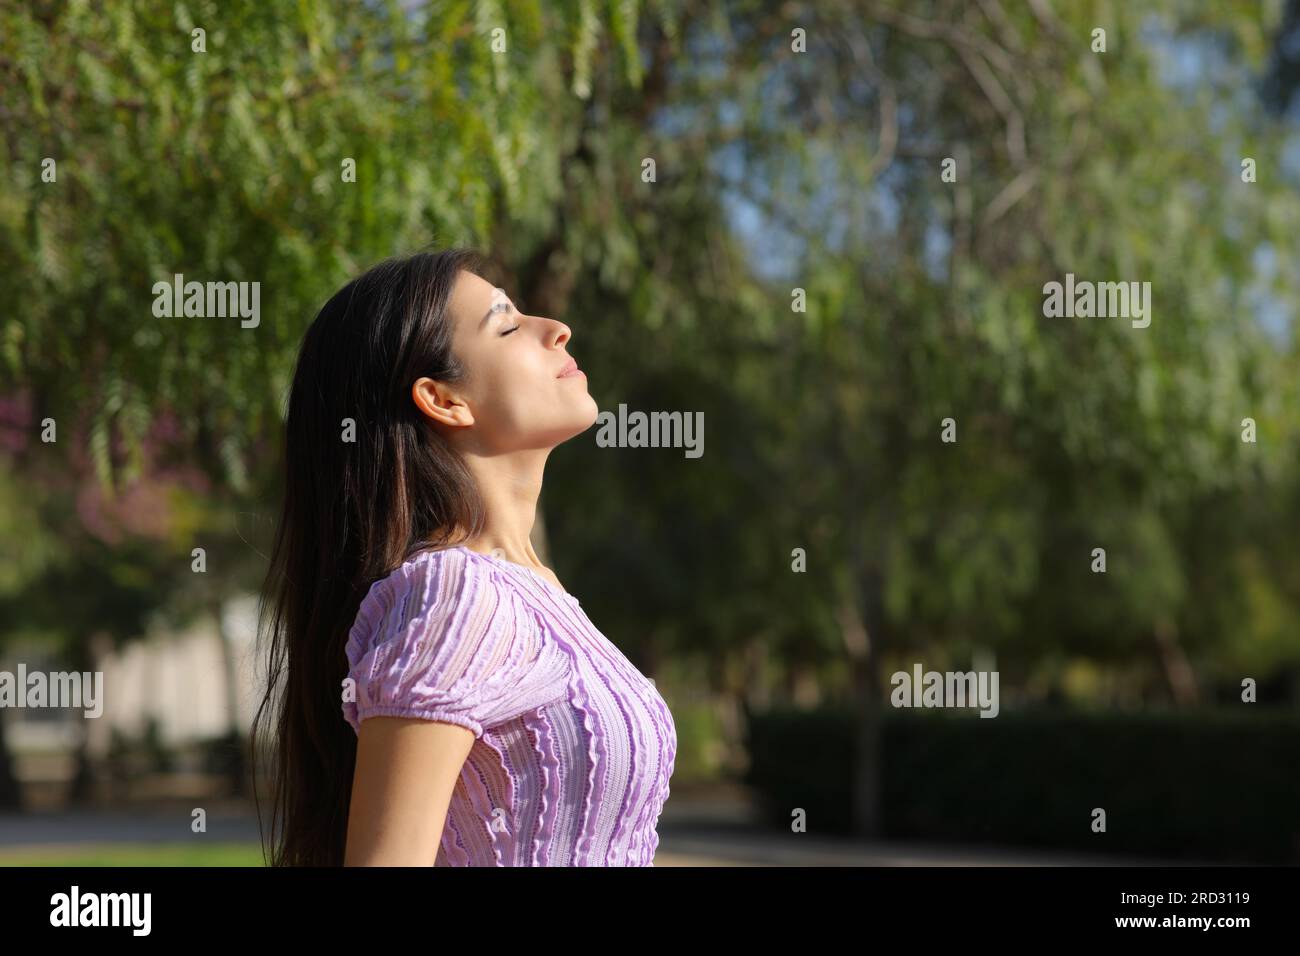 Perfil de una mujer relajada en un parque respirando aire fresco Foto de stock